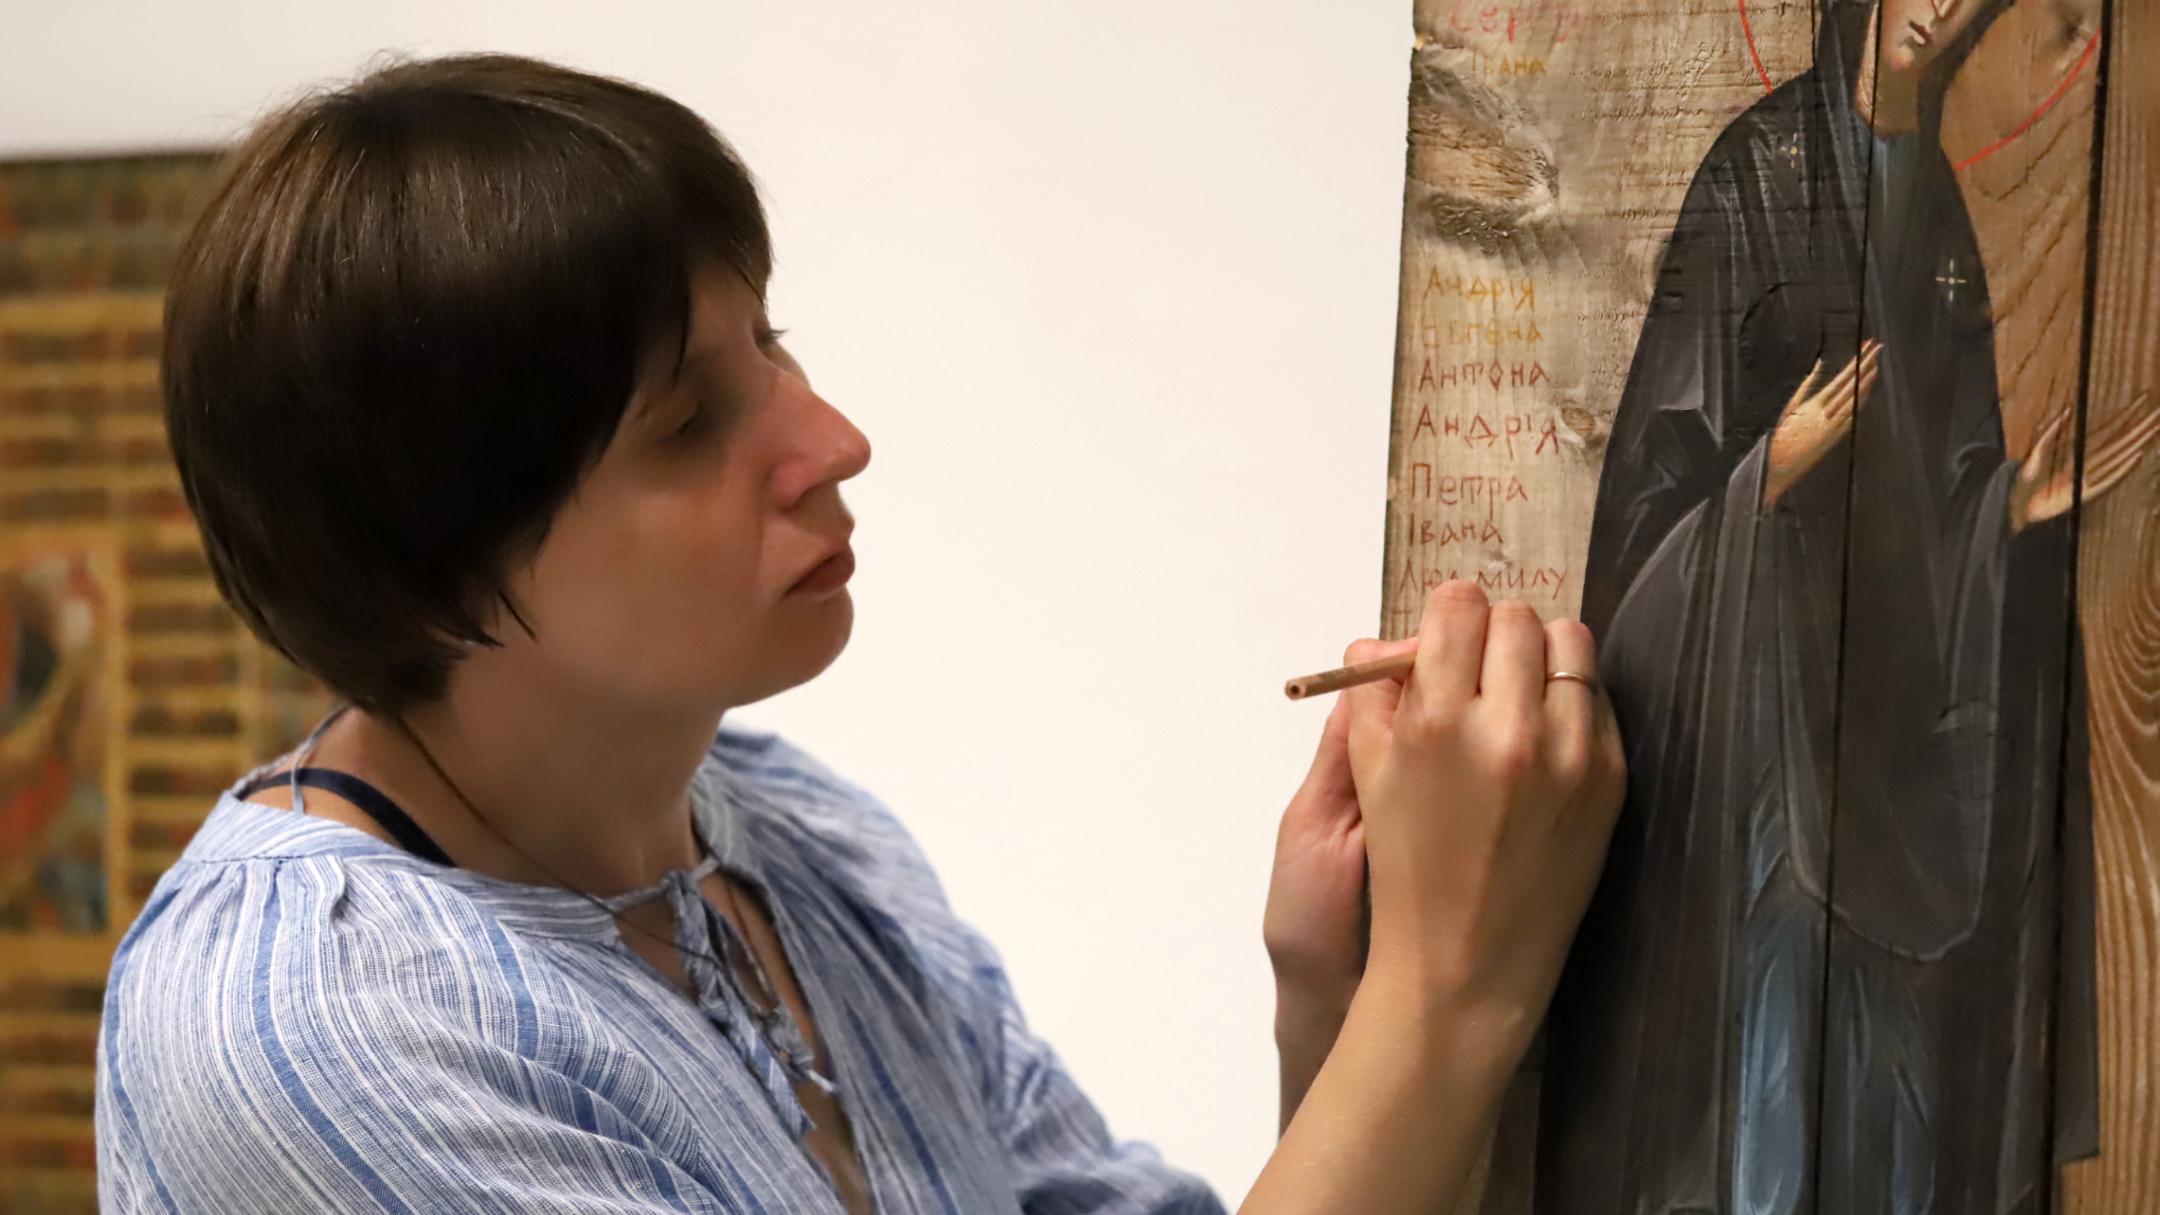 Sofia Atlantova schreibt mit einem dünnen Buntmalstift den ersten Namen eines ukrainischen Kriegsopfers auf das raue Holz